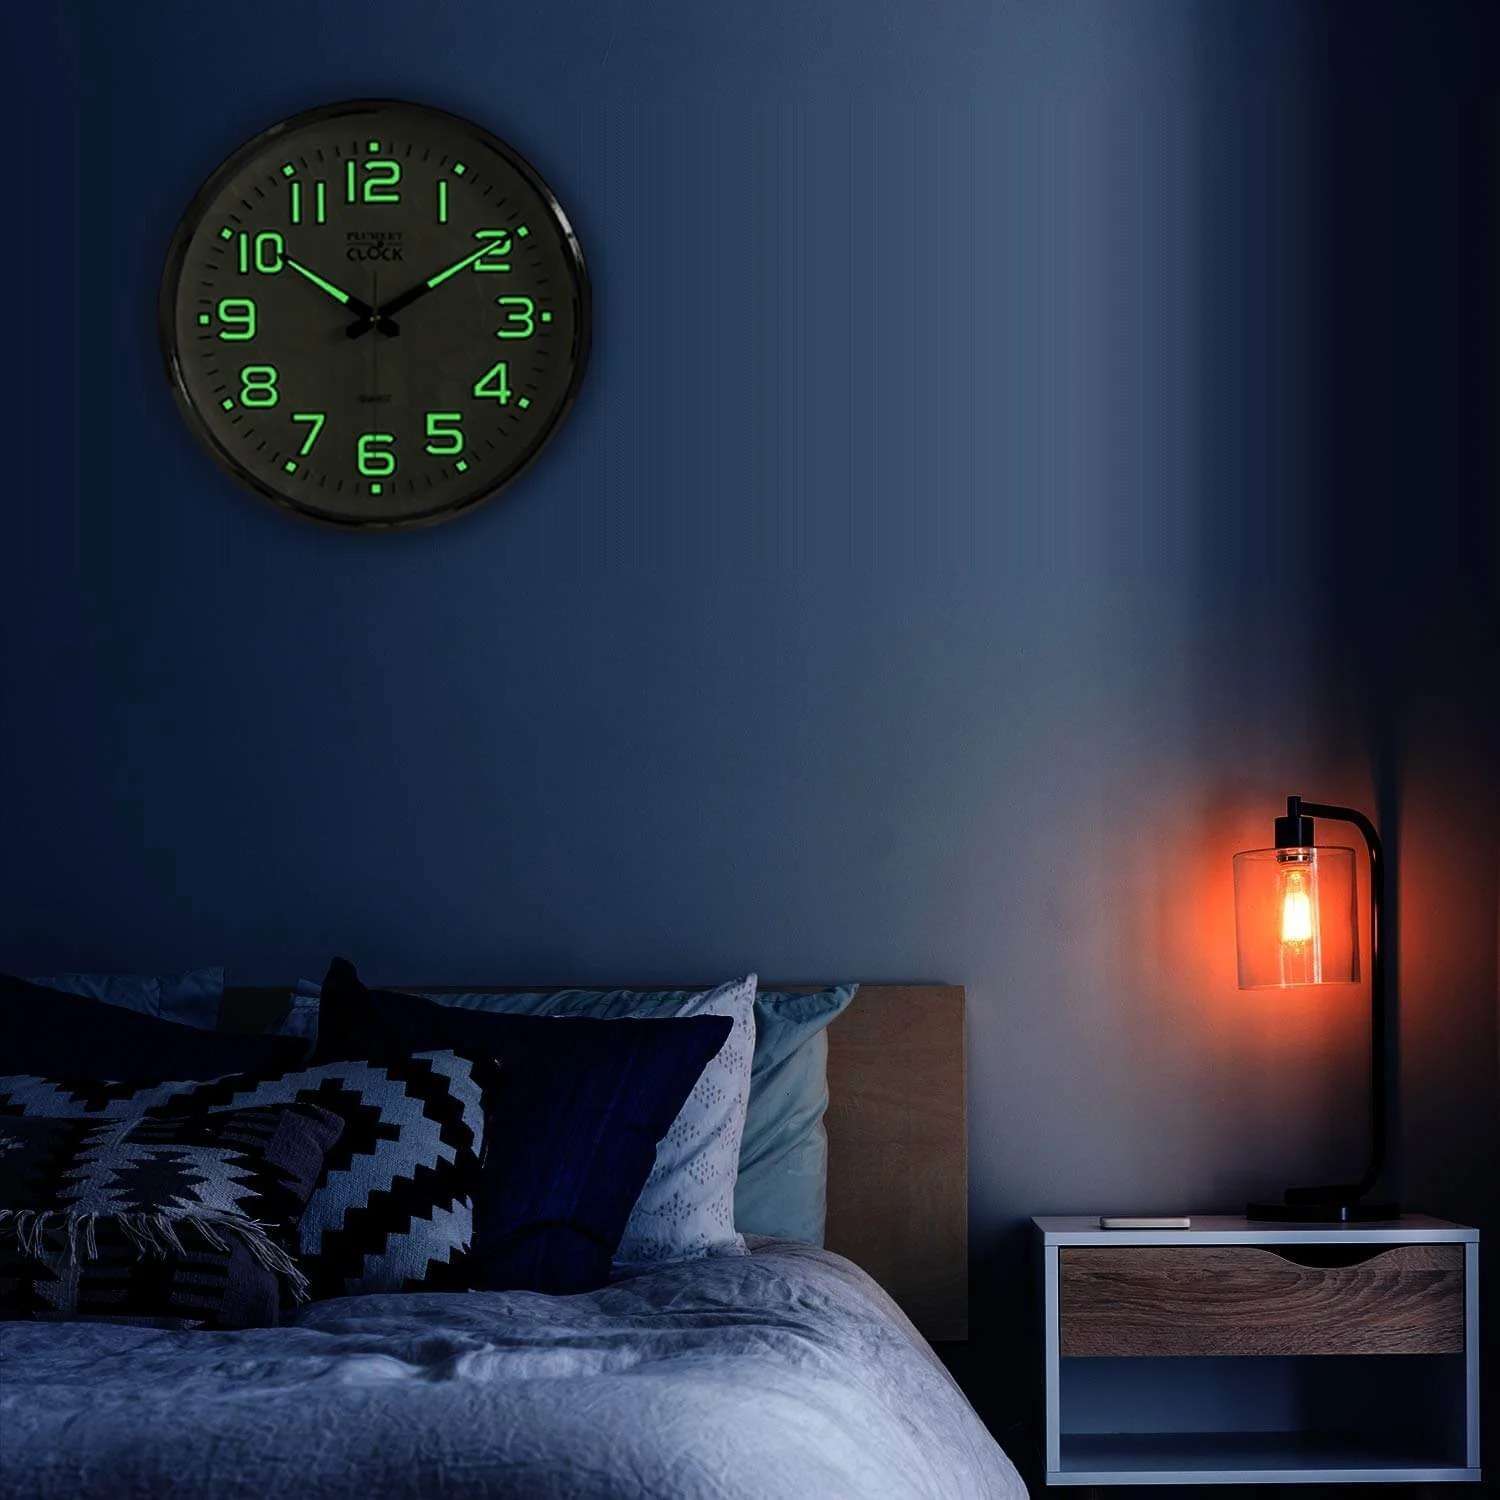 Mẫu đồng hồ phản quang nổi bật trong phòng ngủ